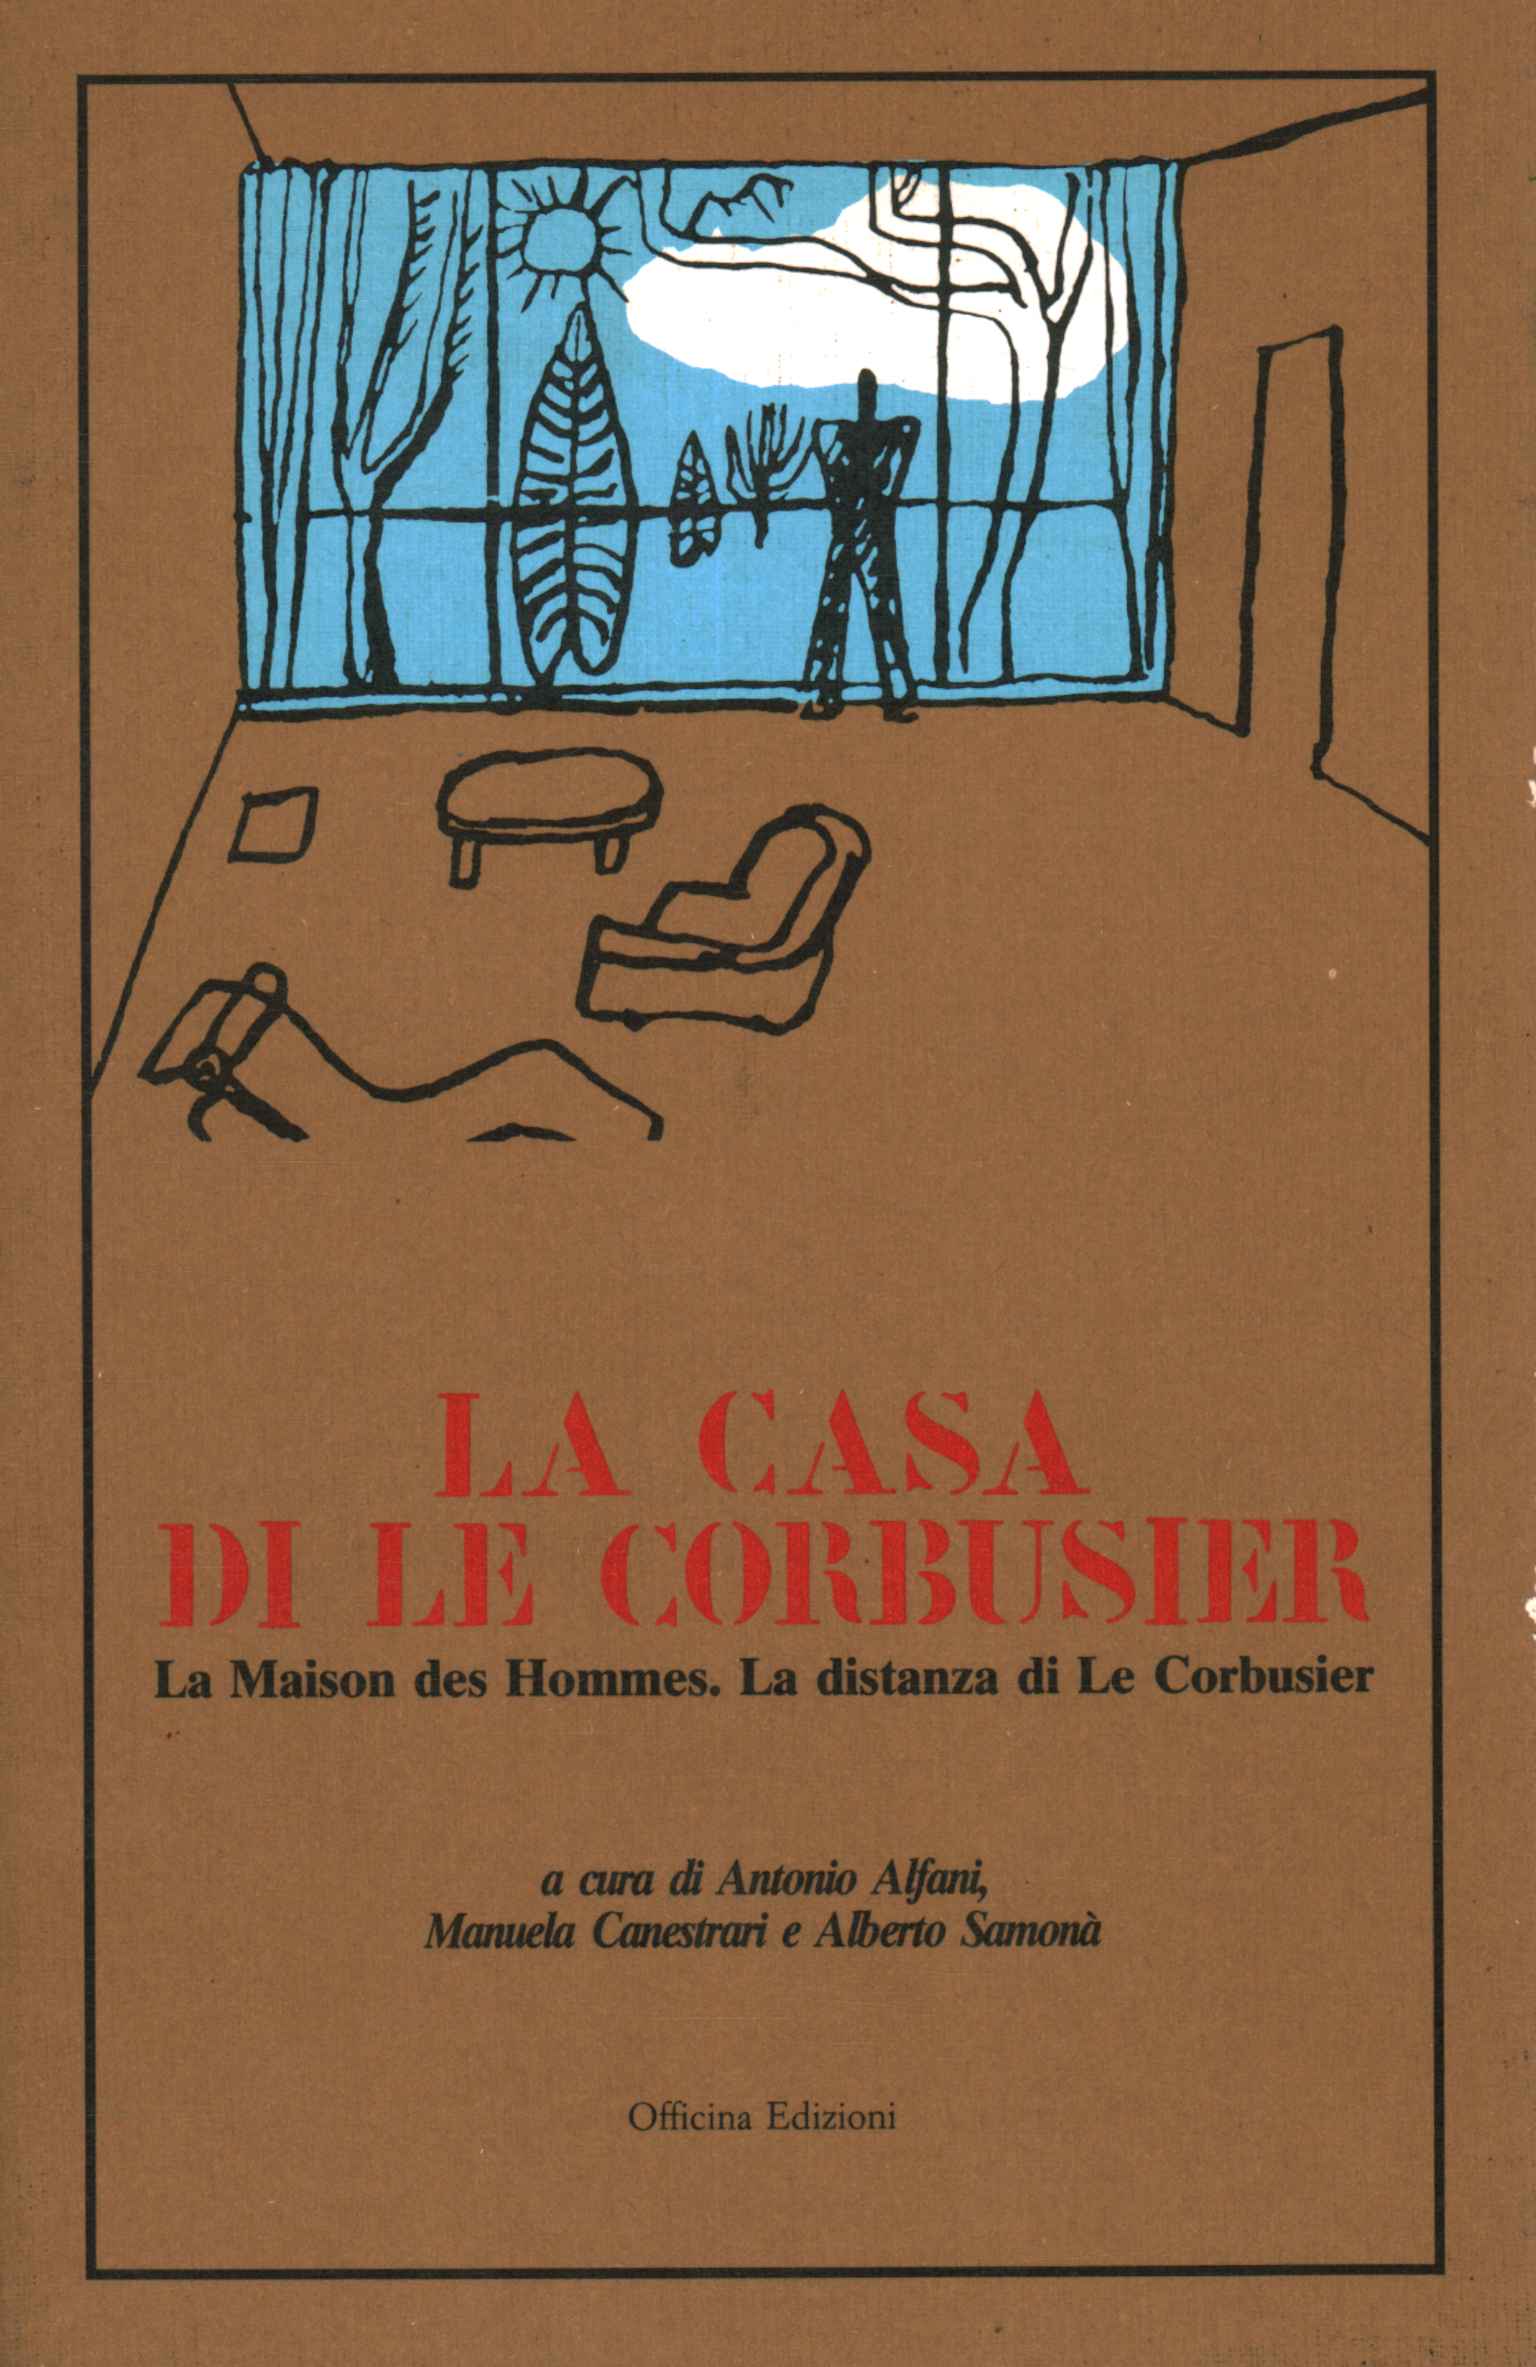 La casa de Le Corbusier